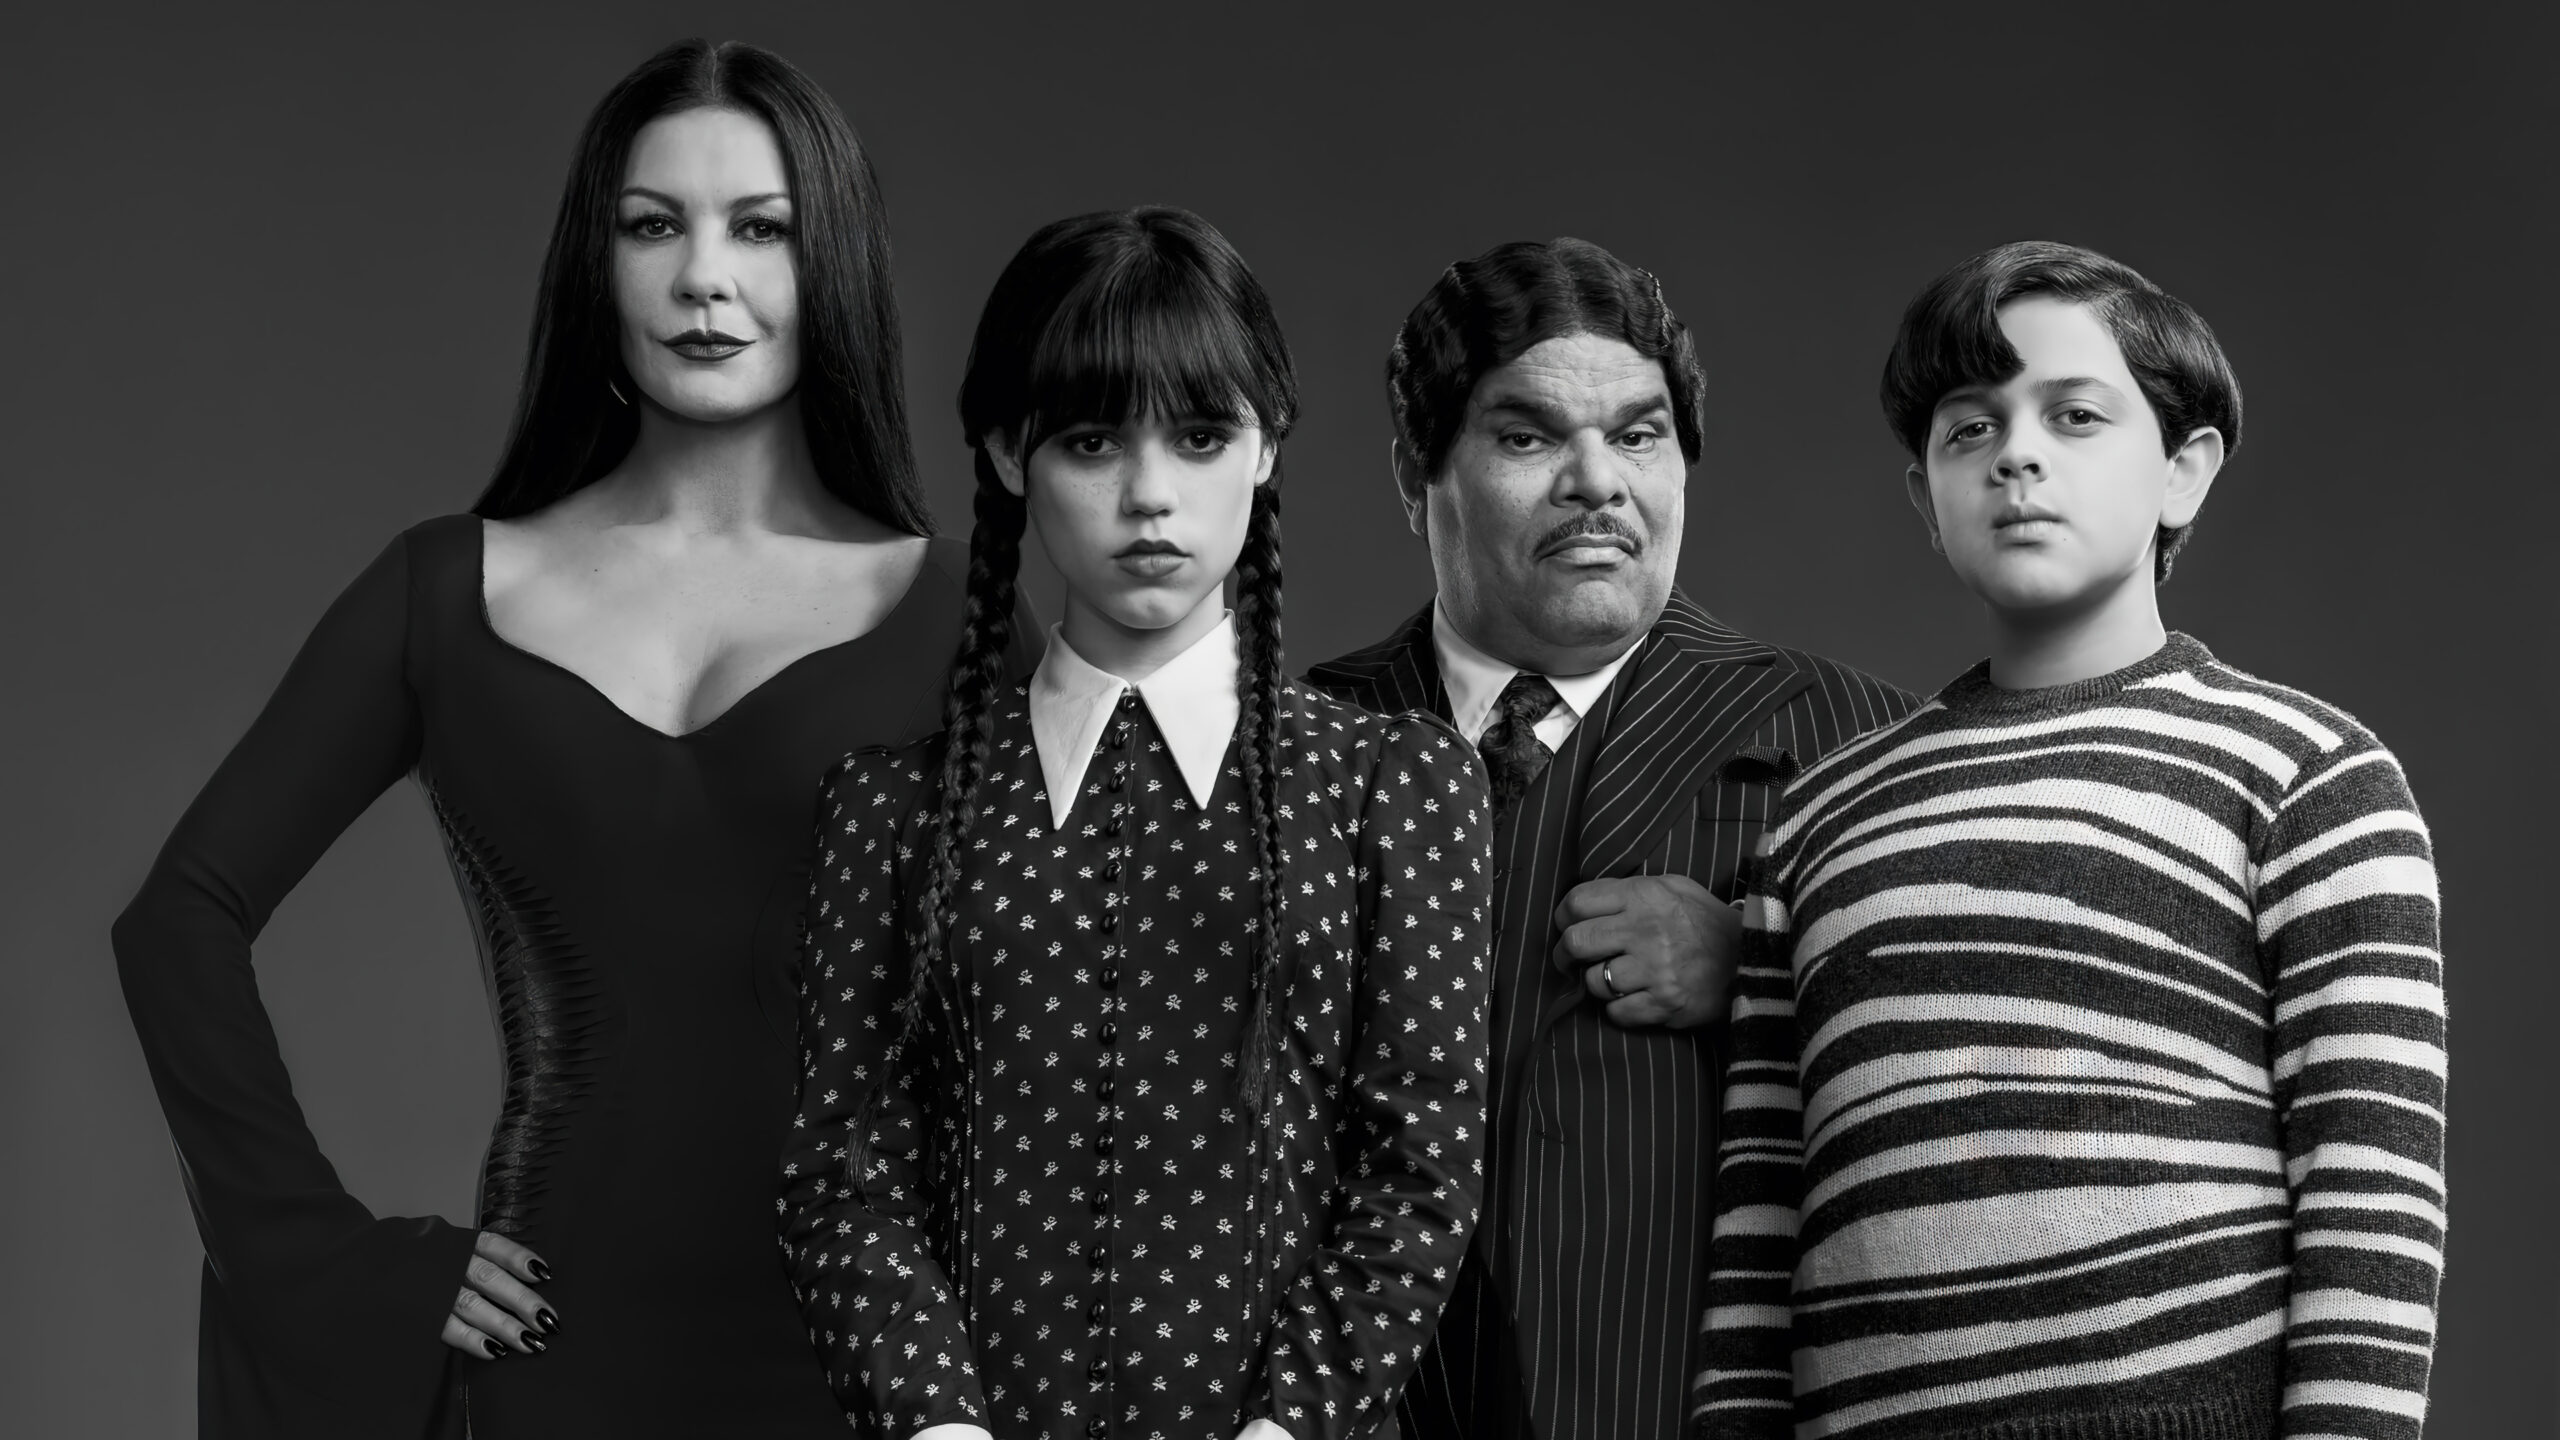 Fondos de Pantalla de Merlina Addams - La serie de Netflix de la familia Addams en 4K